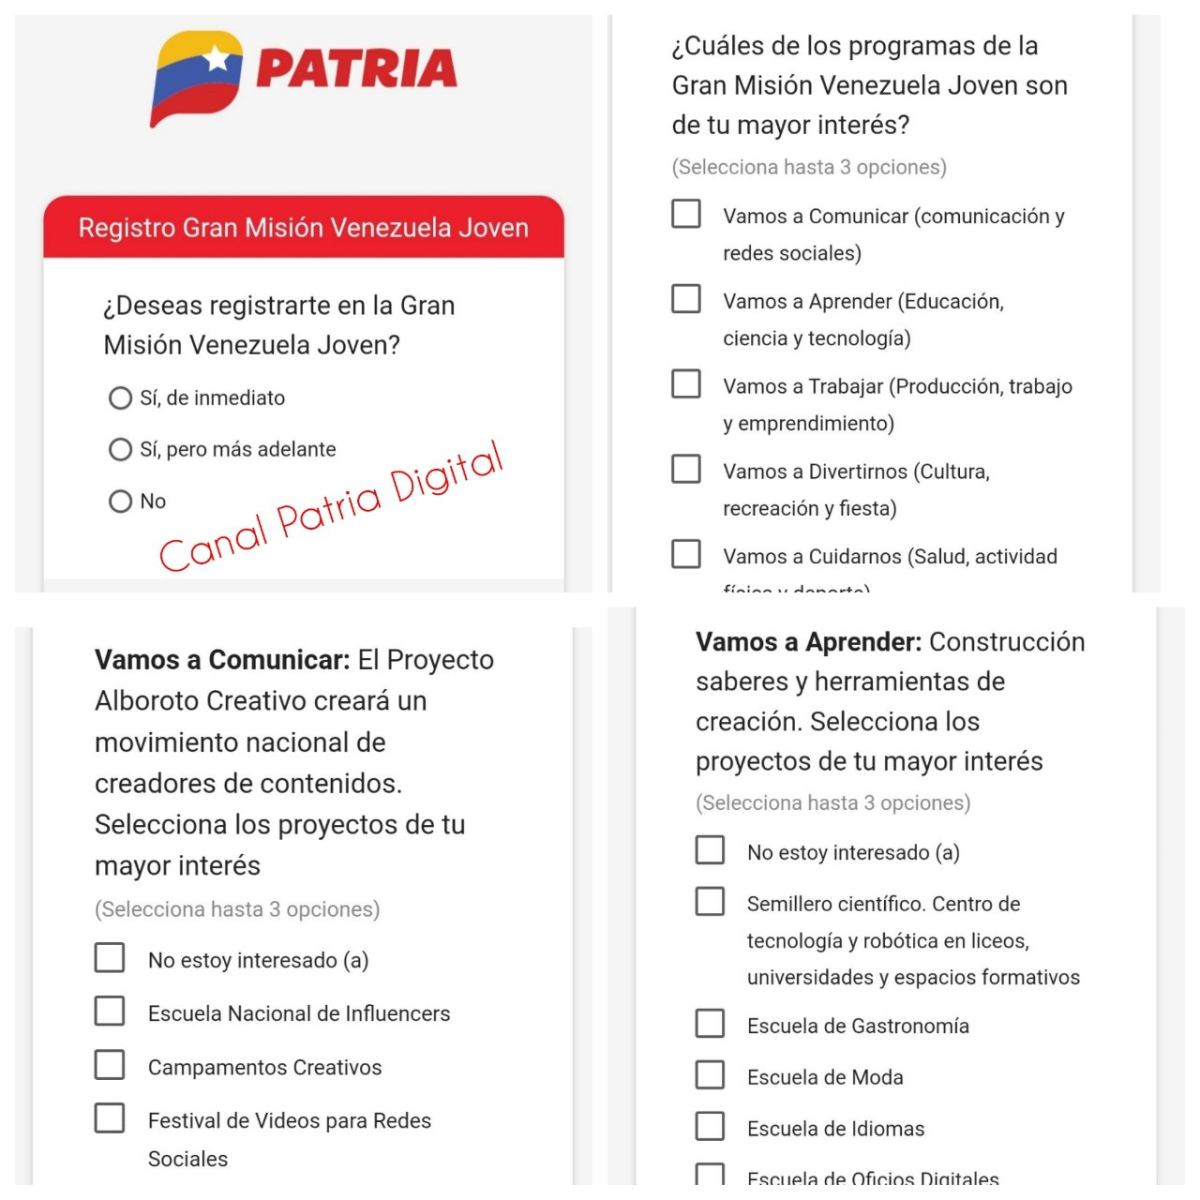 Sistema Patria activó el registro de la Gran Misión Venezuela Joven